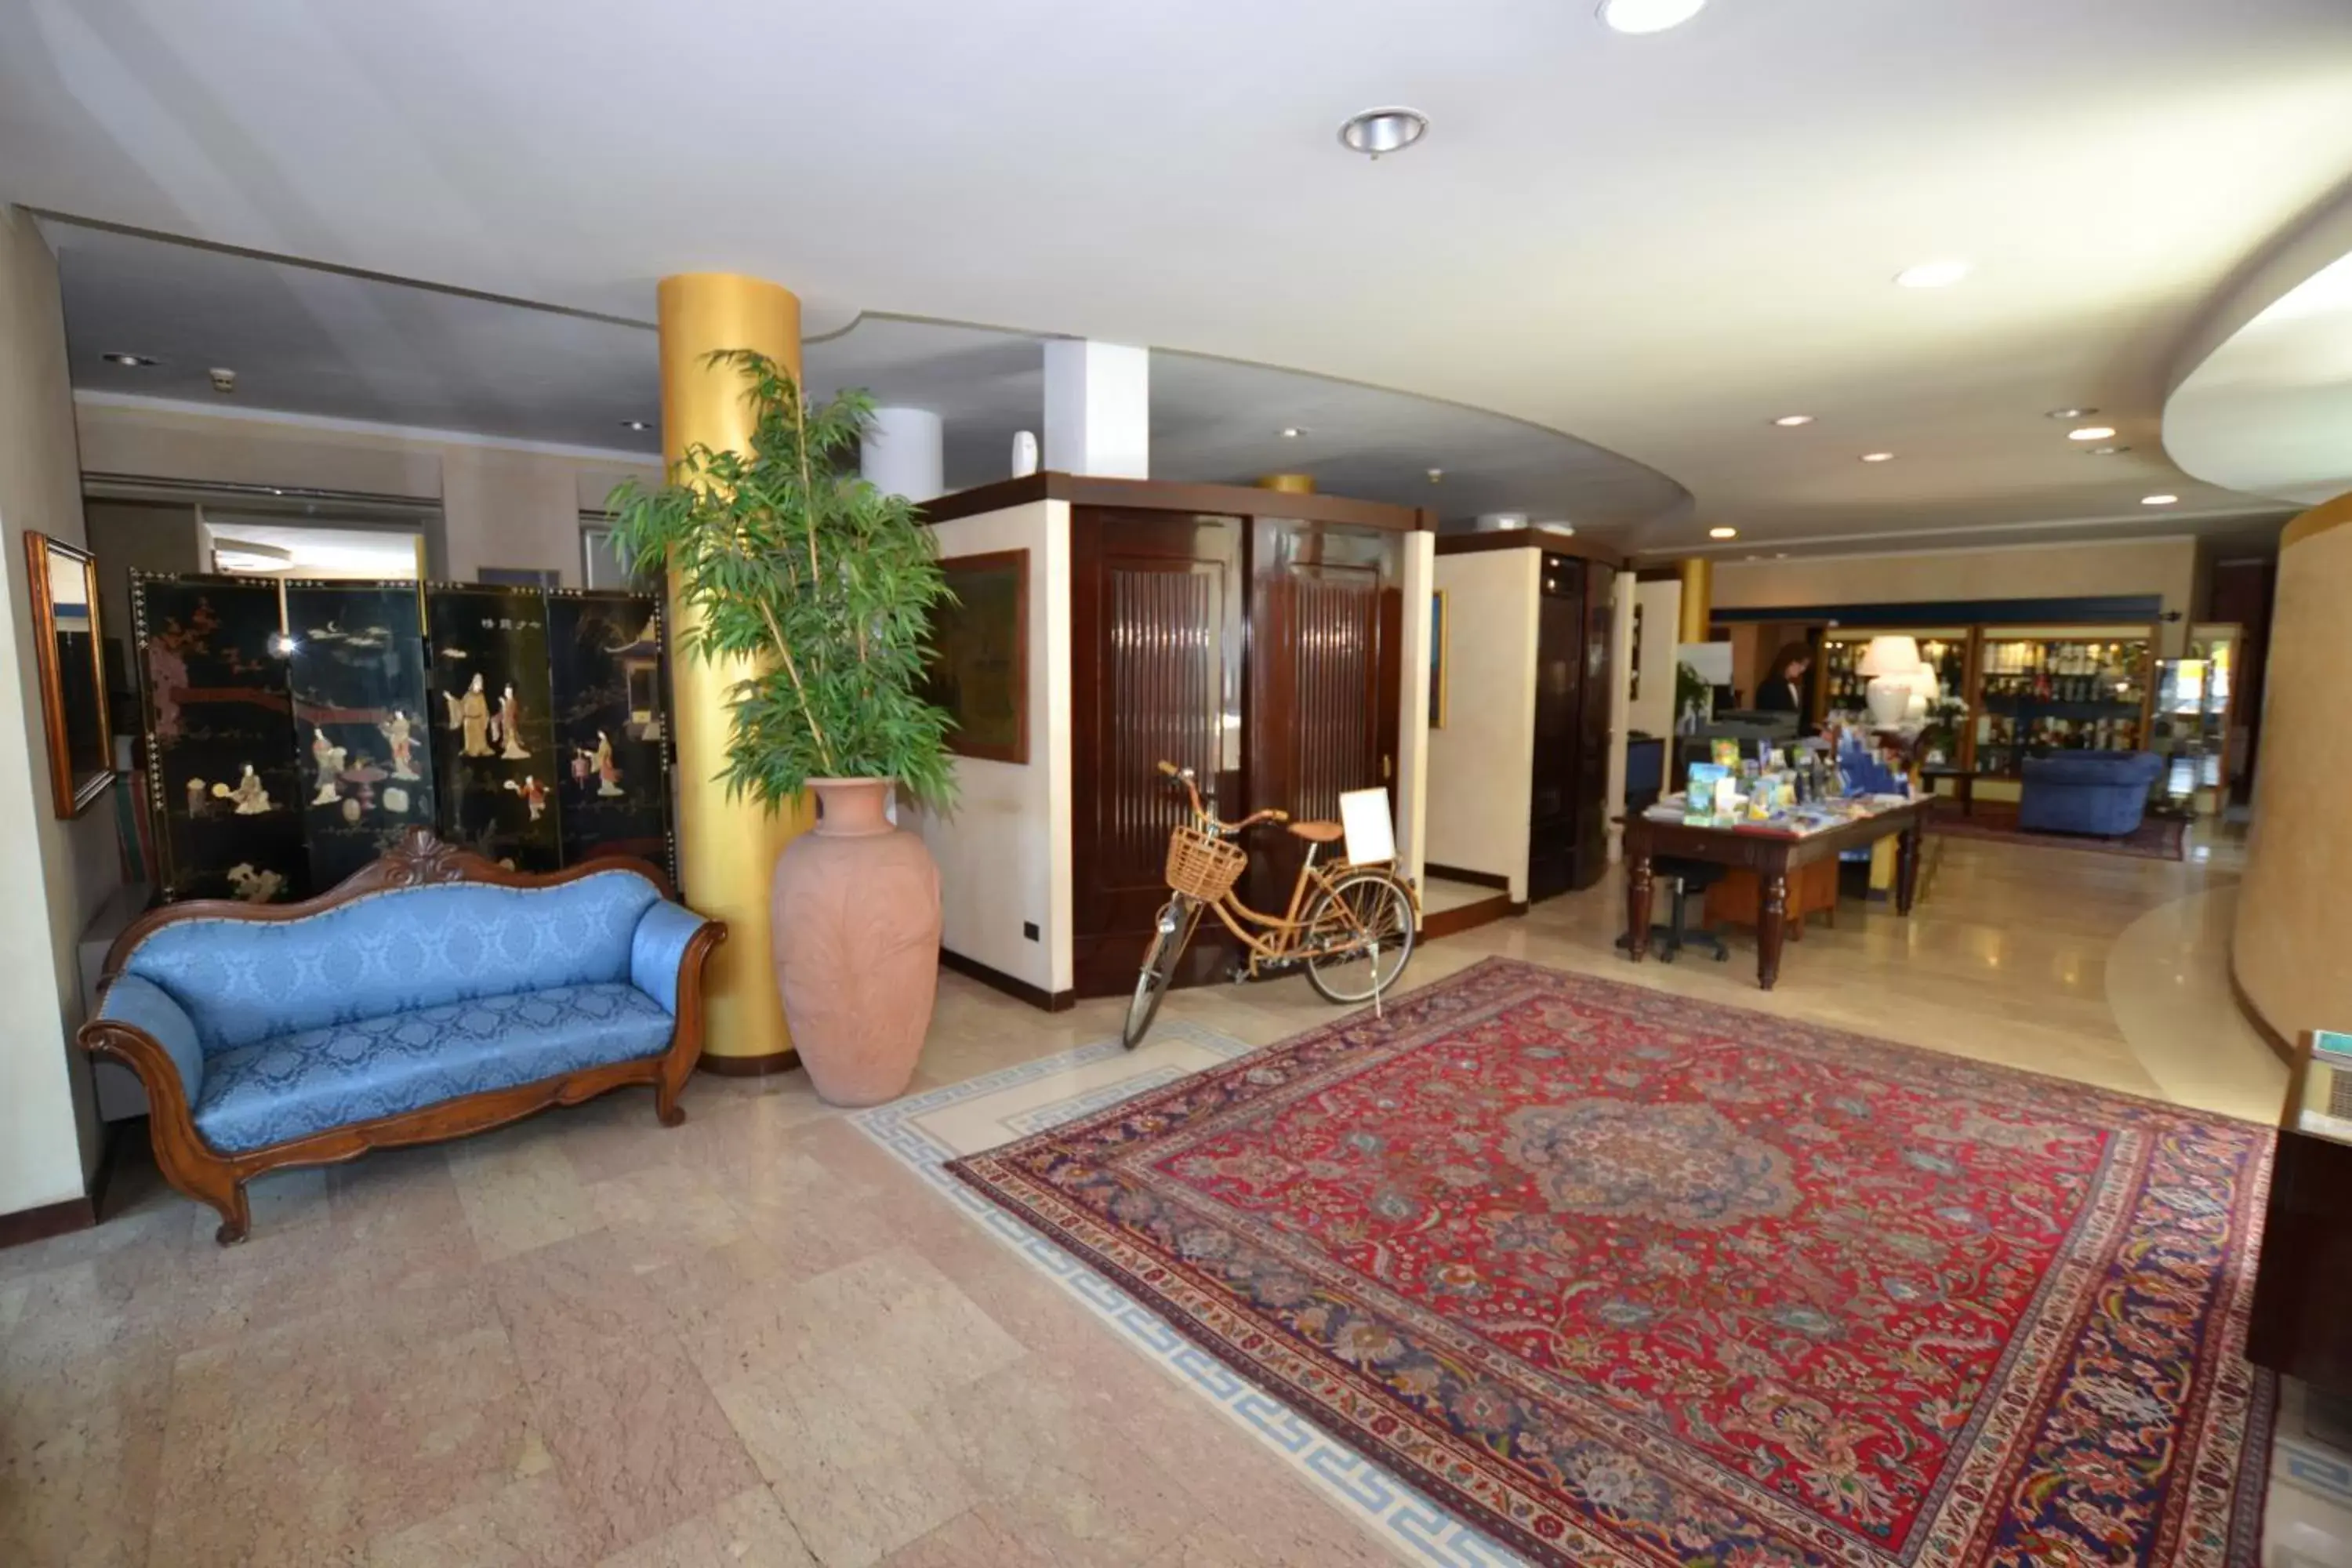 Lobby or reception, Lobby/Reception in Hotel Enrichetta